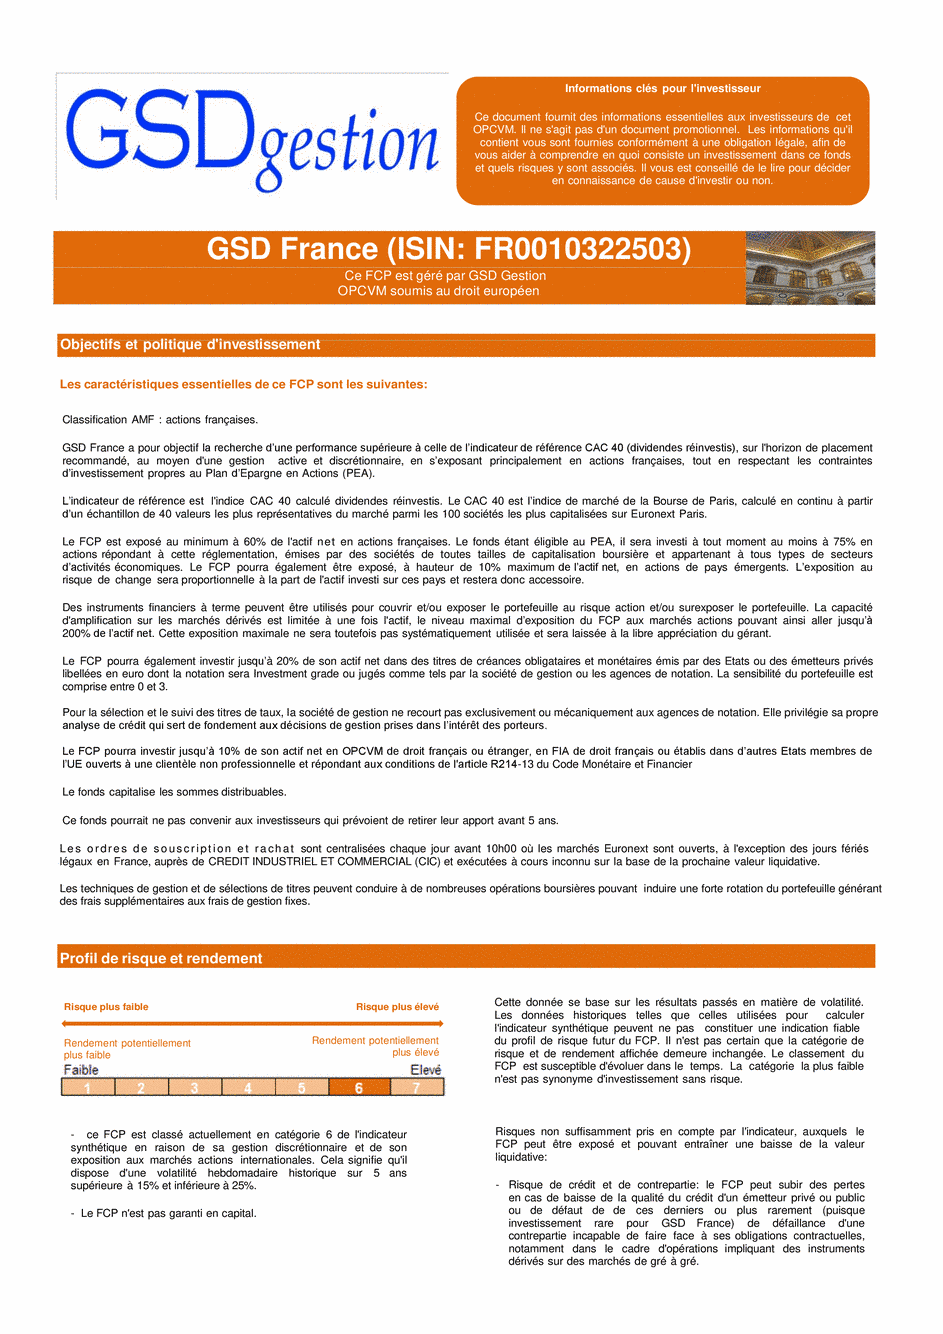 DICI-Prospectus Complet GSD France - 01/04/2019 - Français